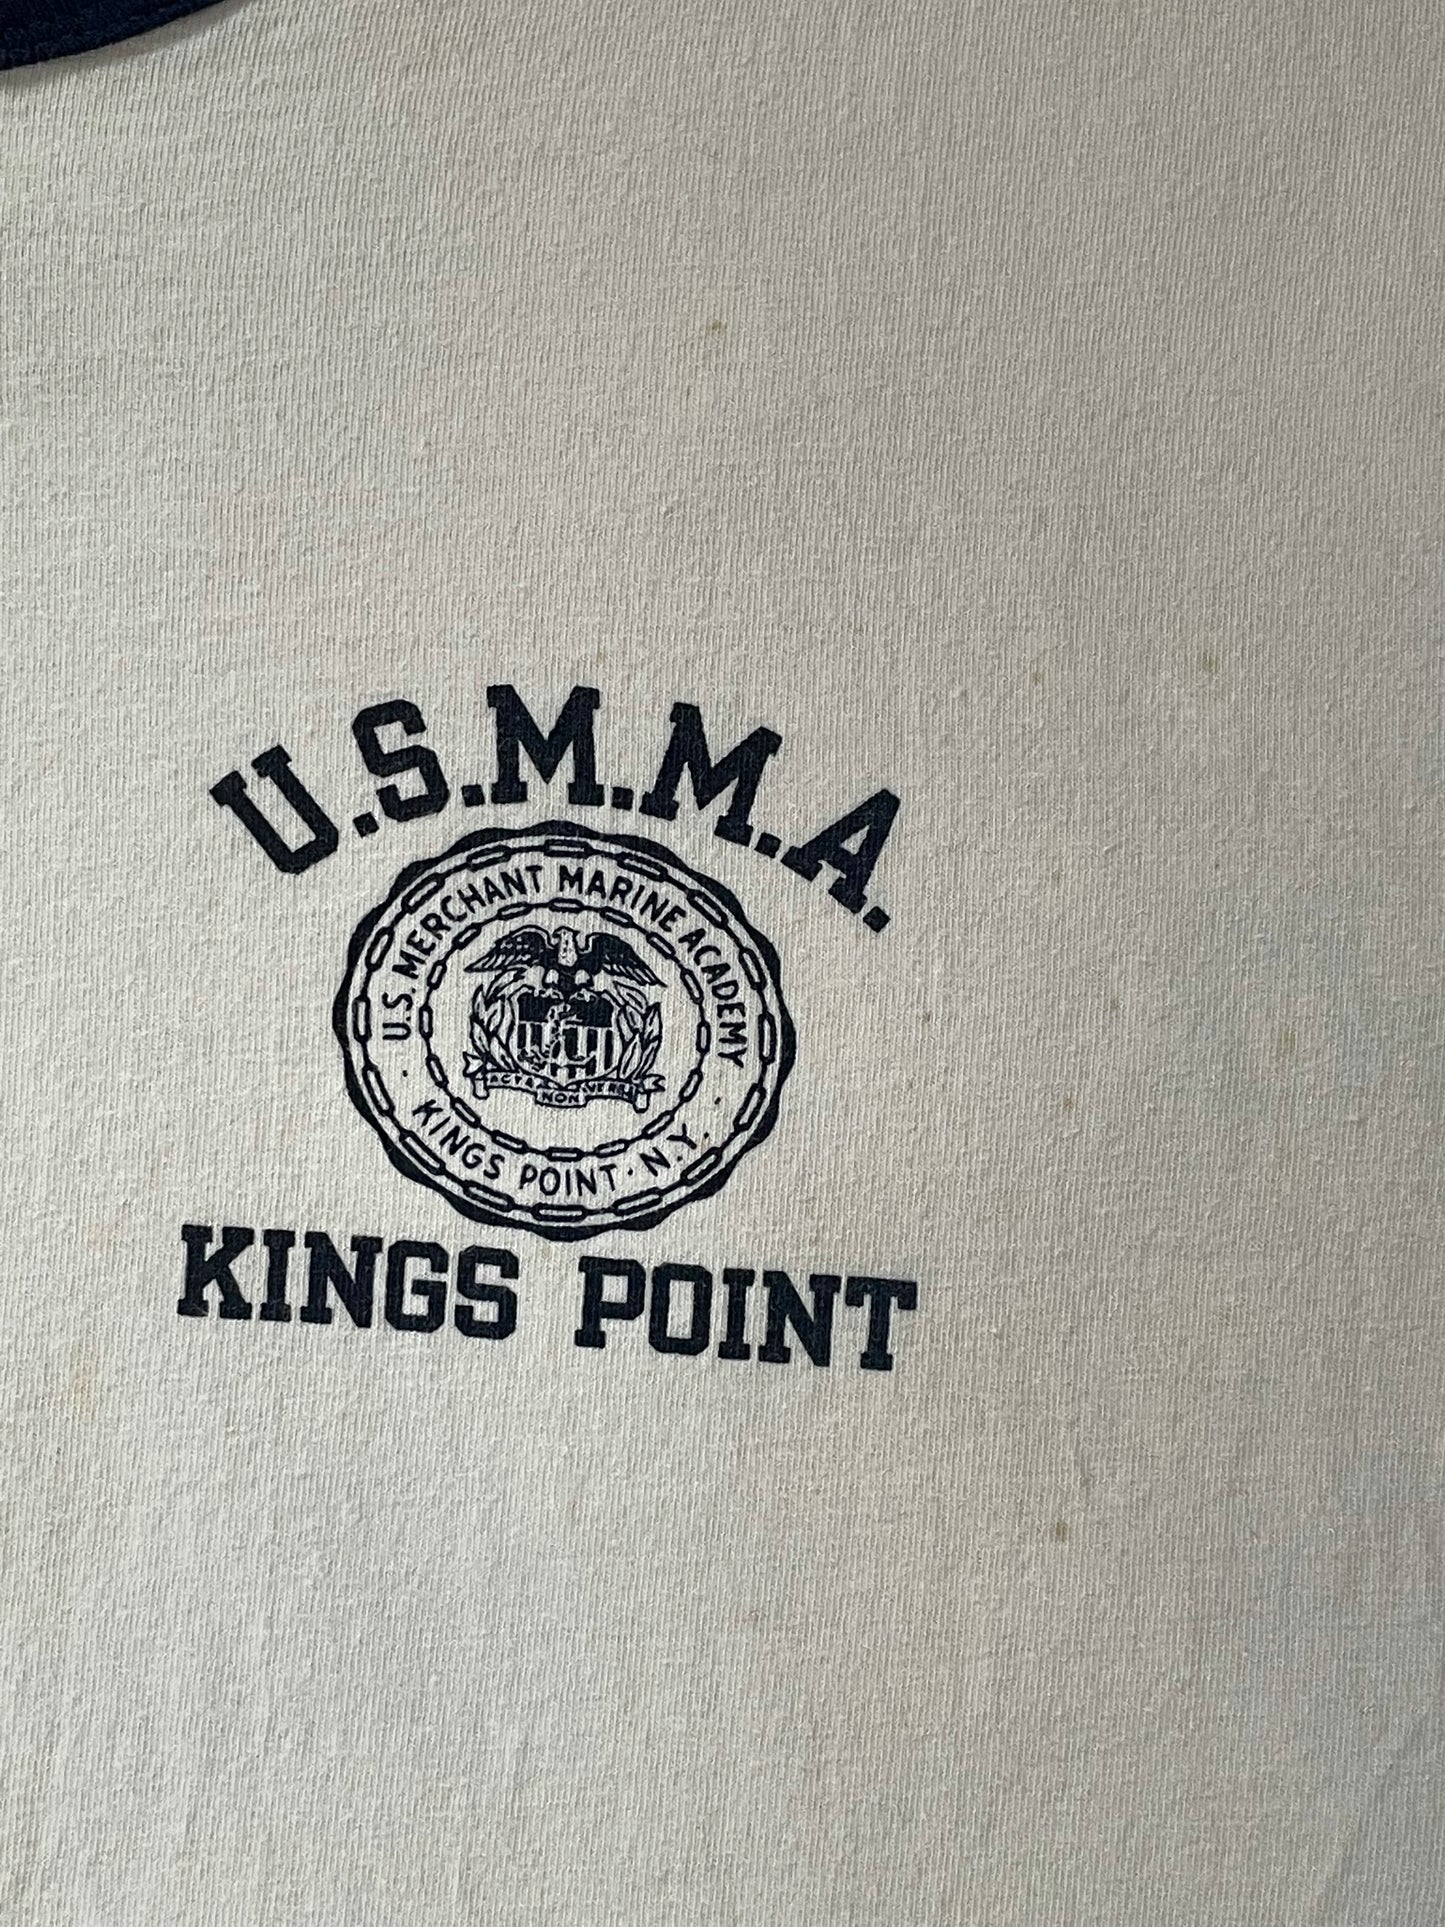 80s Champion USMMA Kings Point, NY Tee